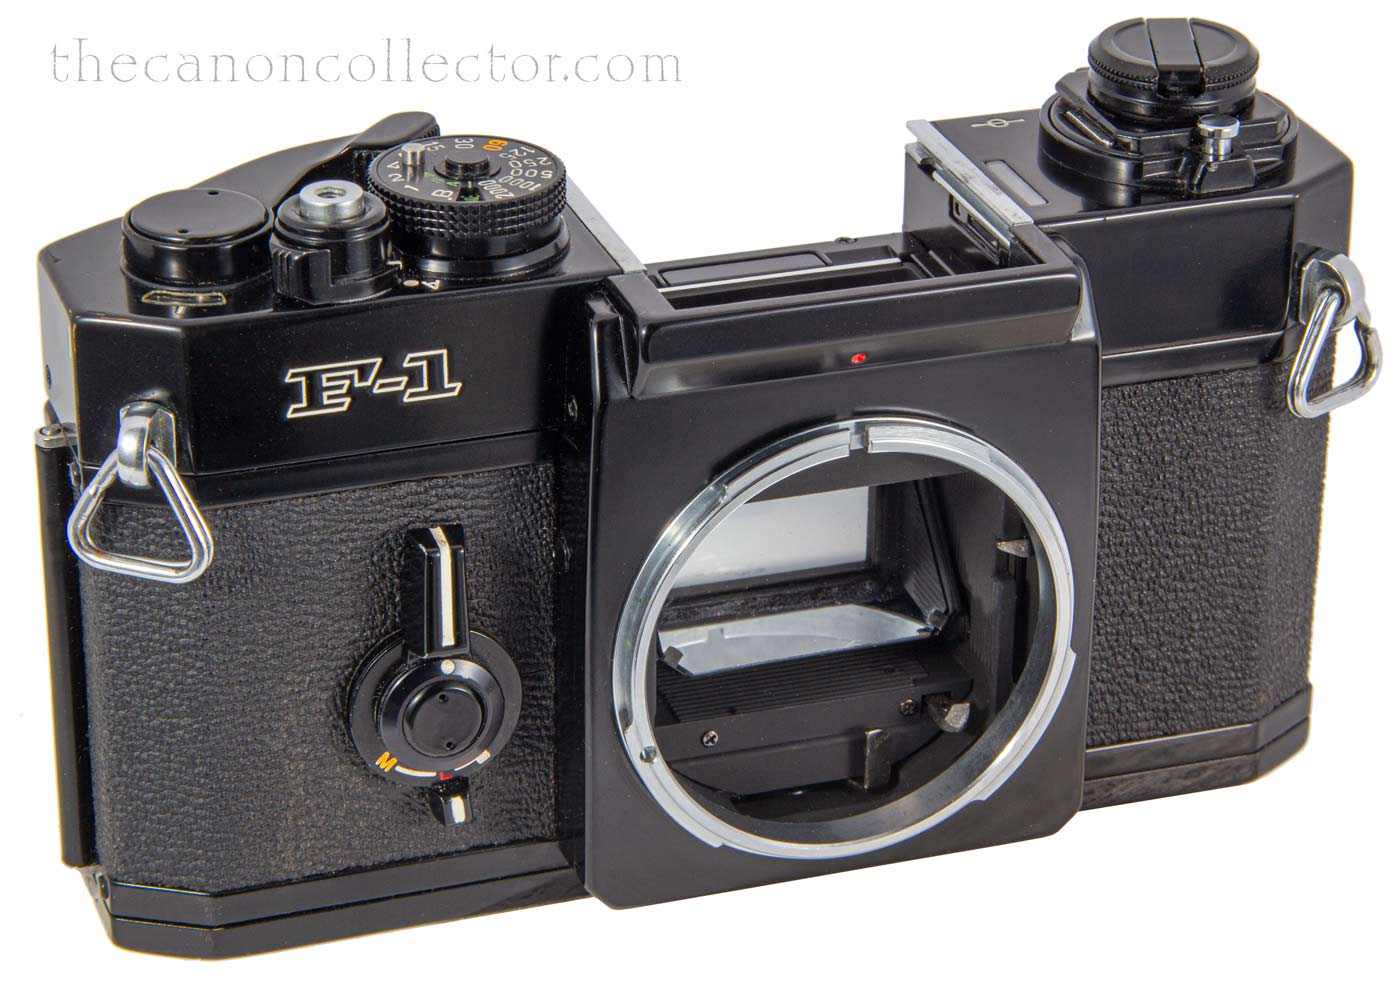 Canon F-1 Camera